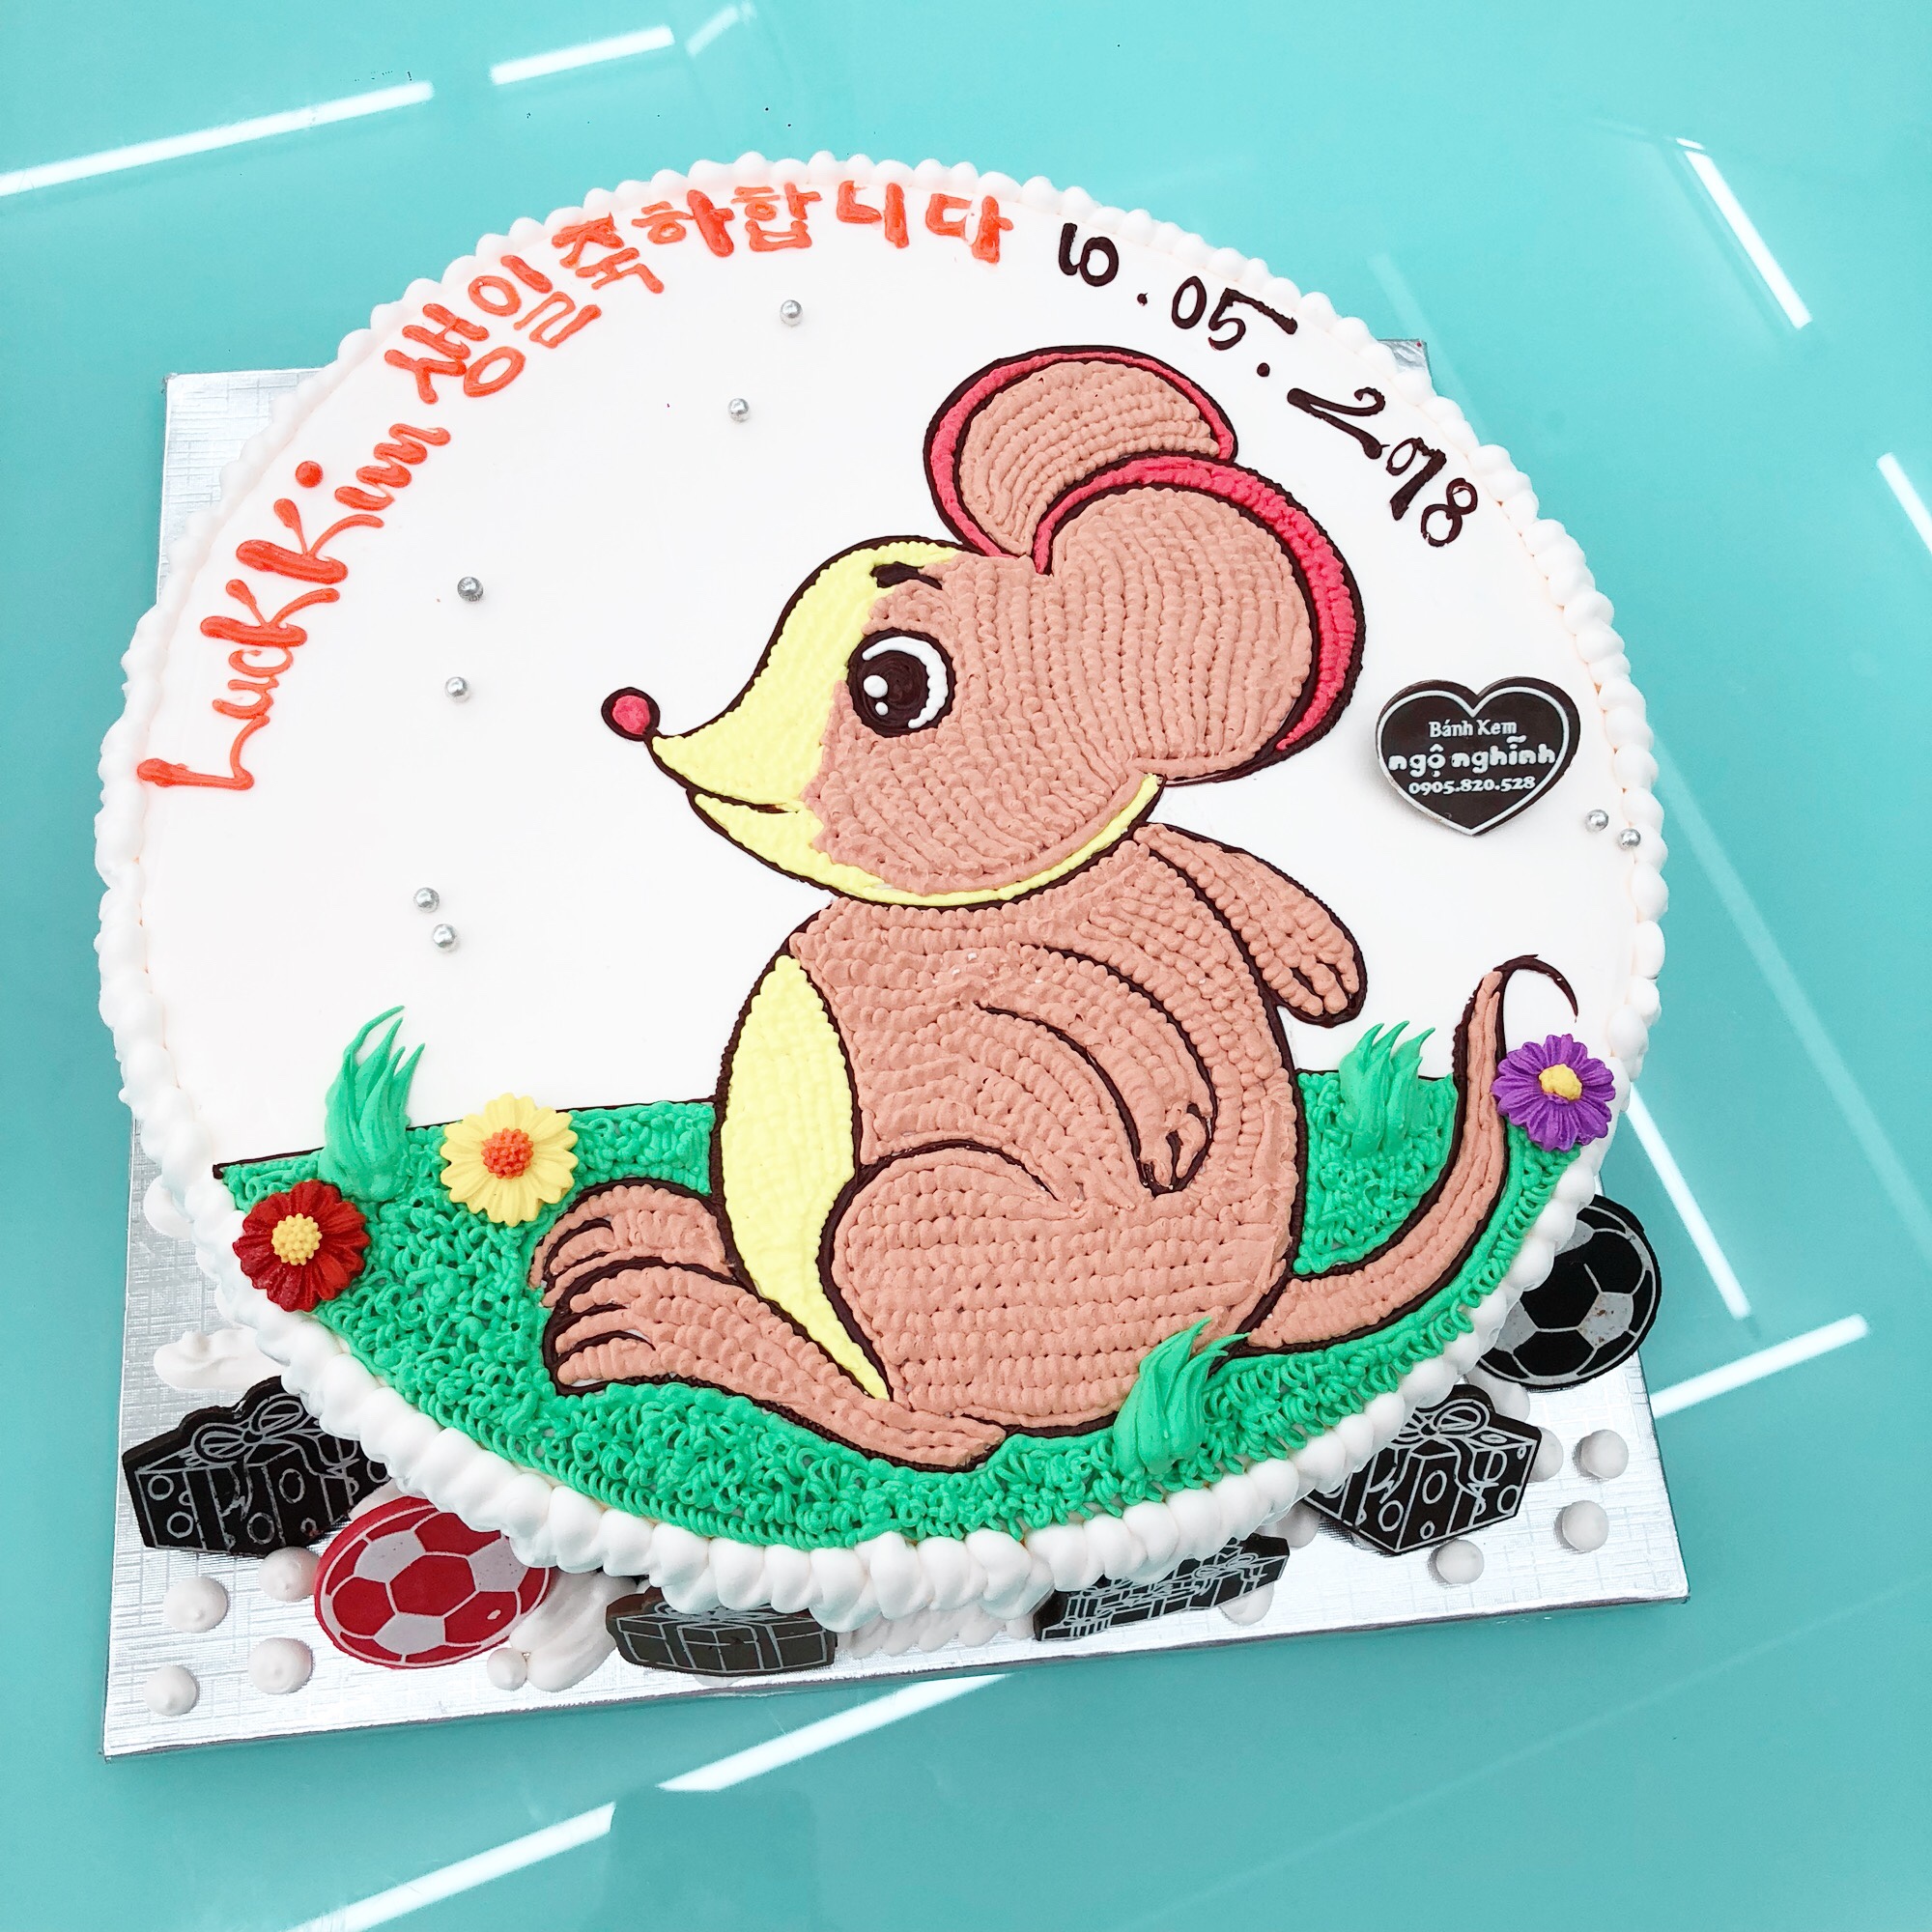 Món bánh sinh nhật vẽ hình con chuột tuổi Tý ngộ nghĩnh đáng yêu sẽ là điểm nhấn hoàn hảo cho tiệc sinh nhật của người thân, bạn bè. Với hình ảnh dễ thương của con chuột và chiếc bánh thơm ngon, đây chính là món quà mang đến không khí ấm áp và tình yêu thương cho các khách mời.